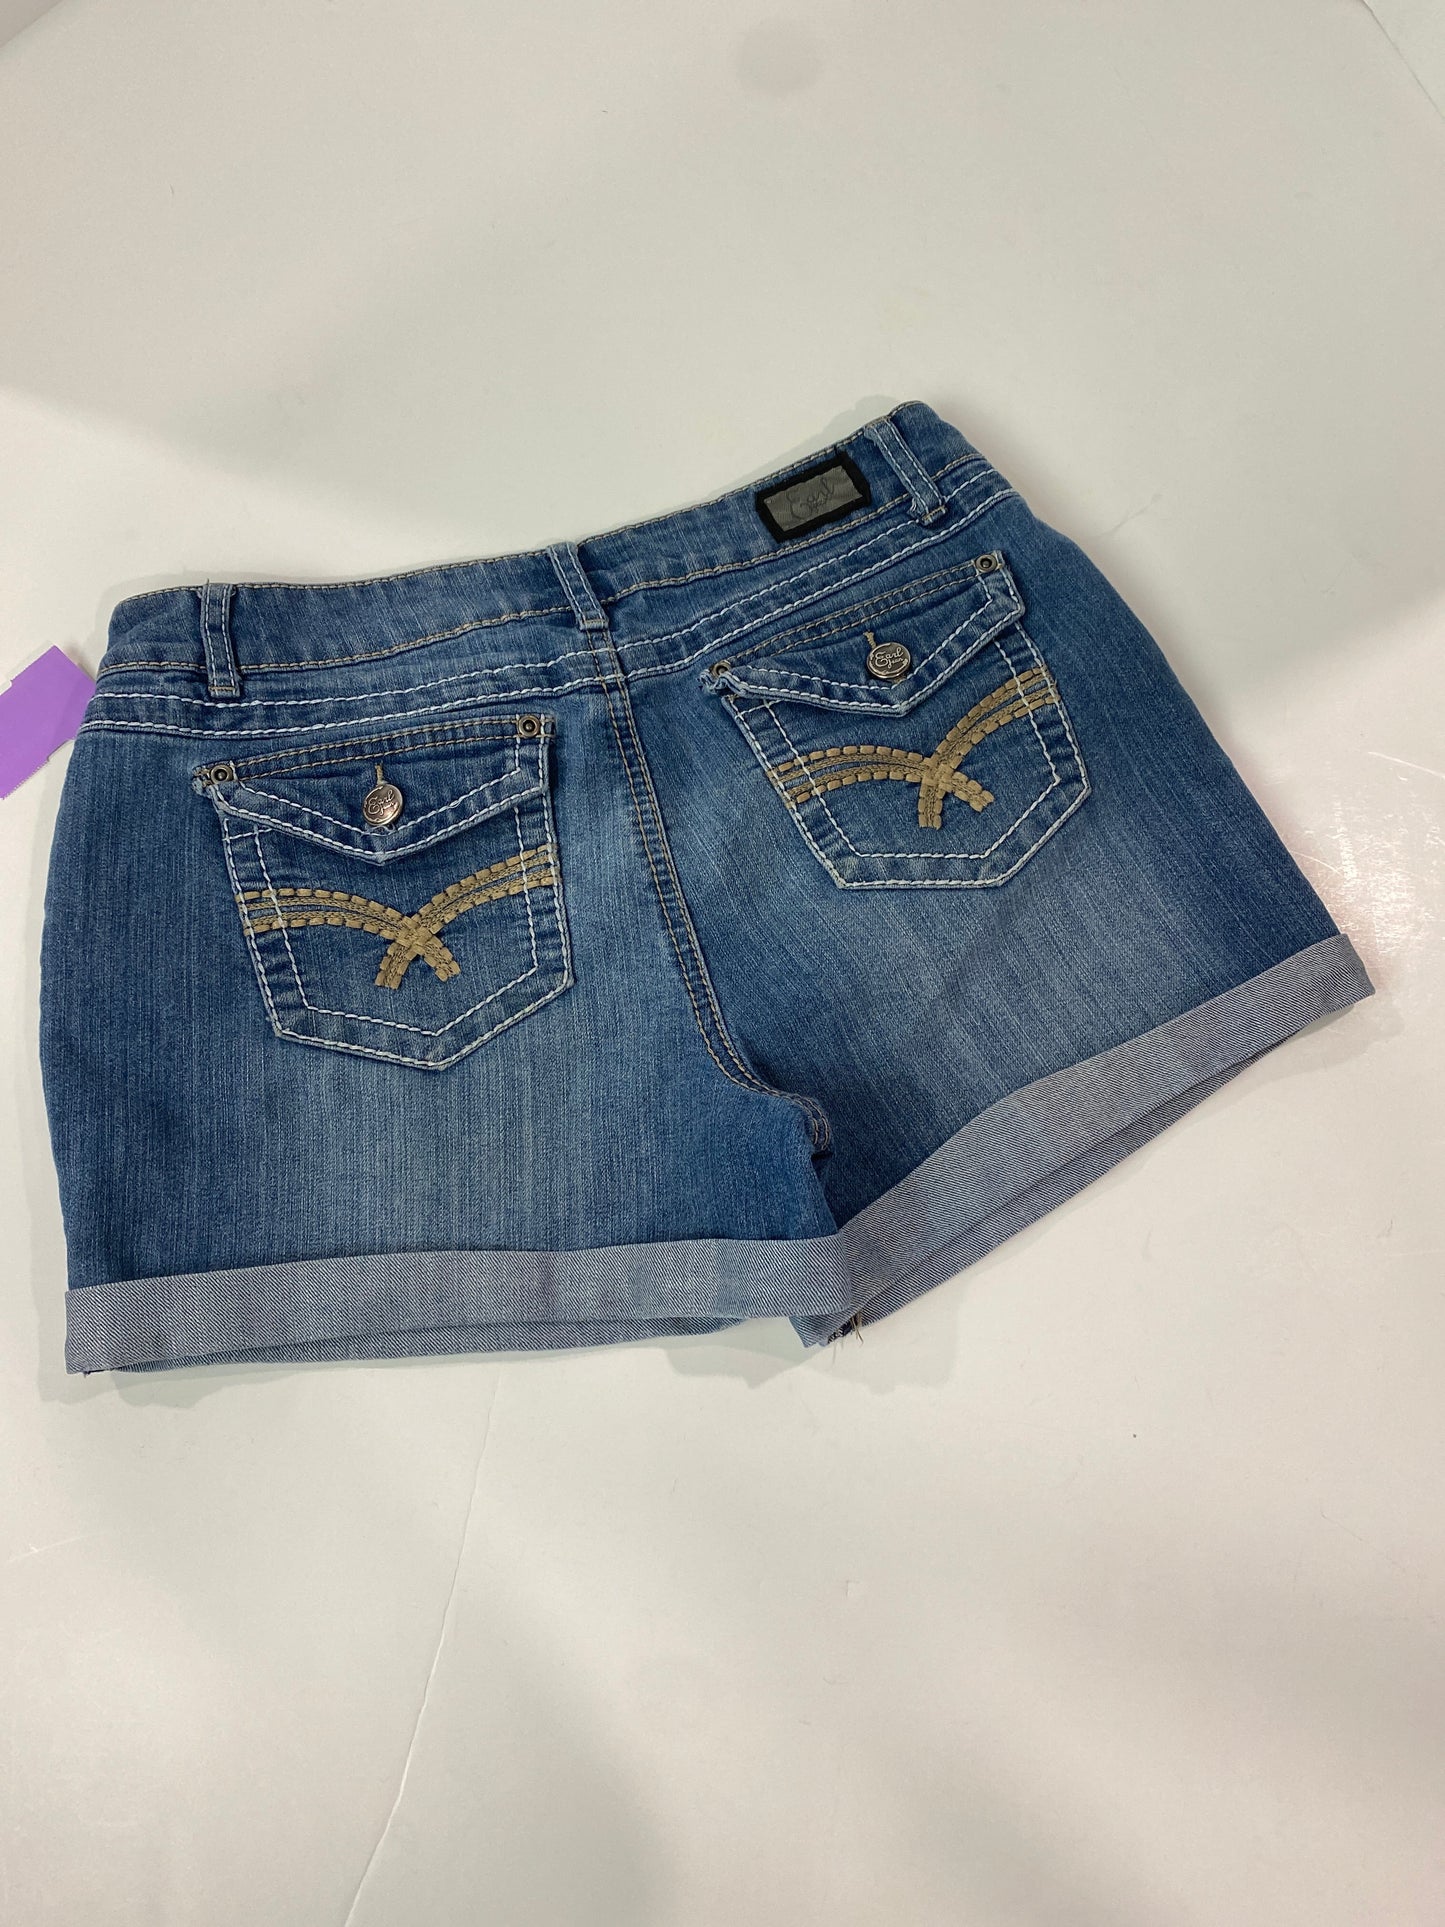 Blue Denim Shorts Earl Jean, Size 8